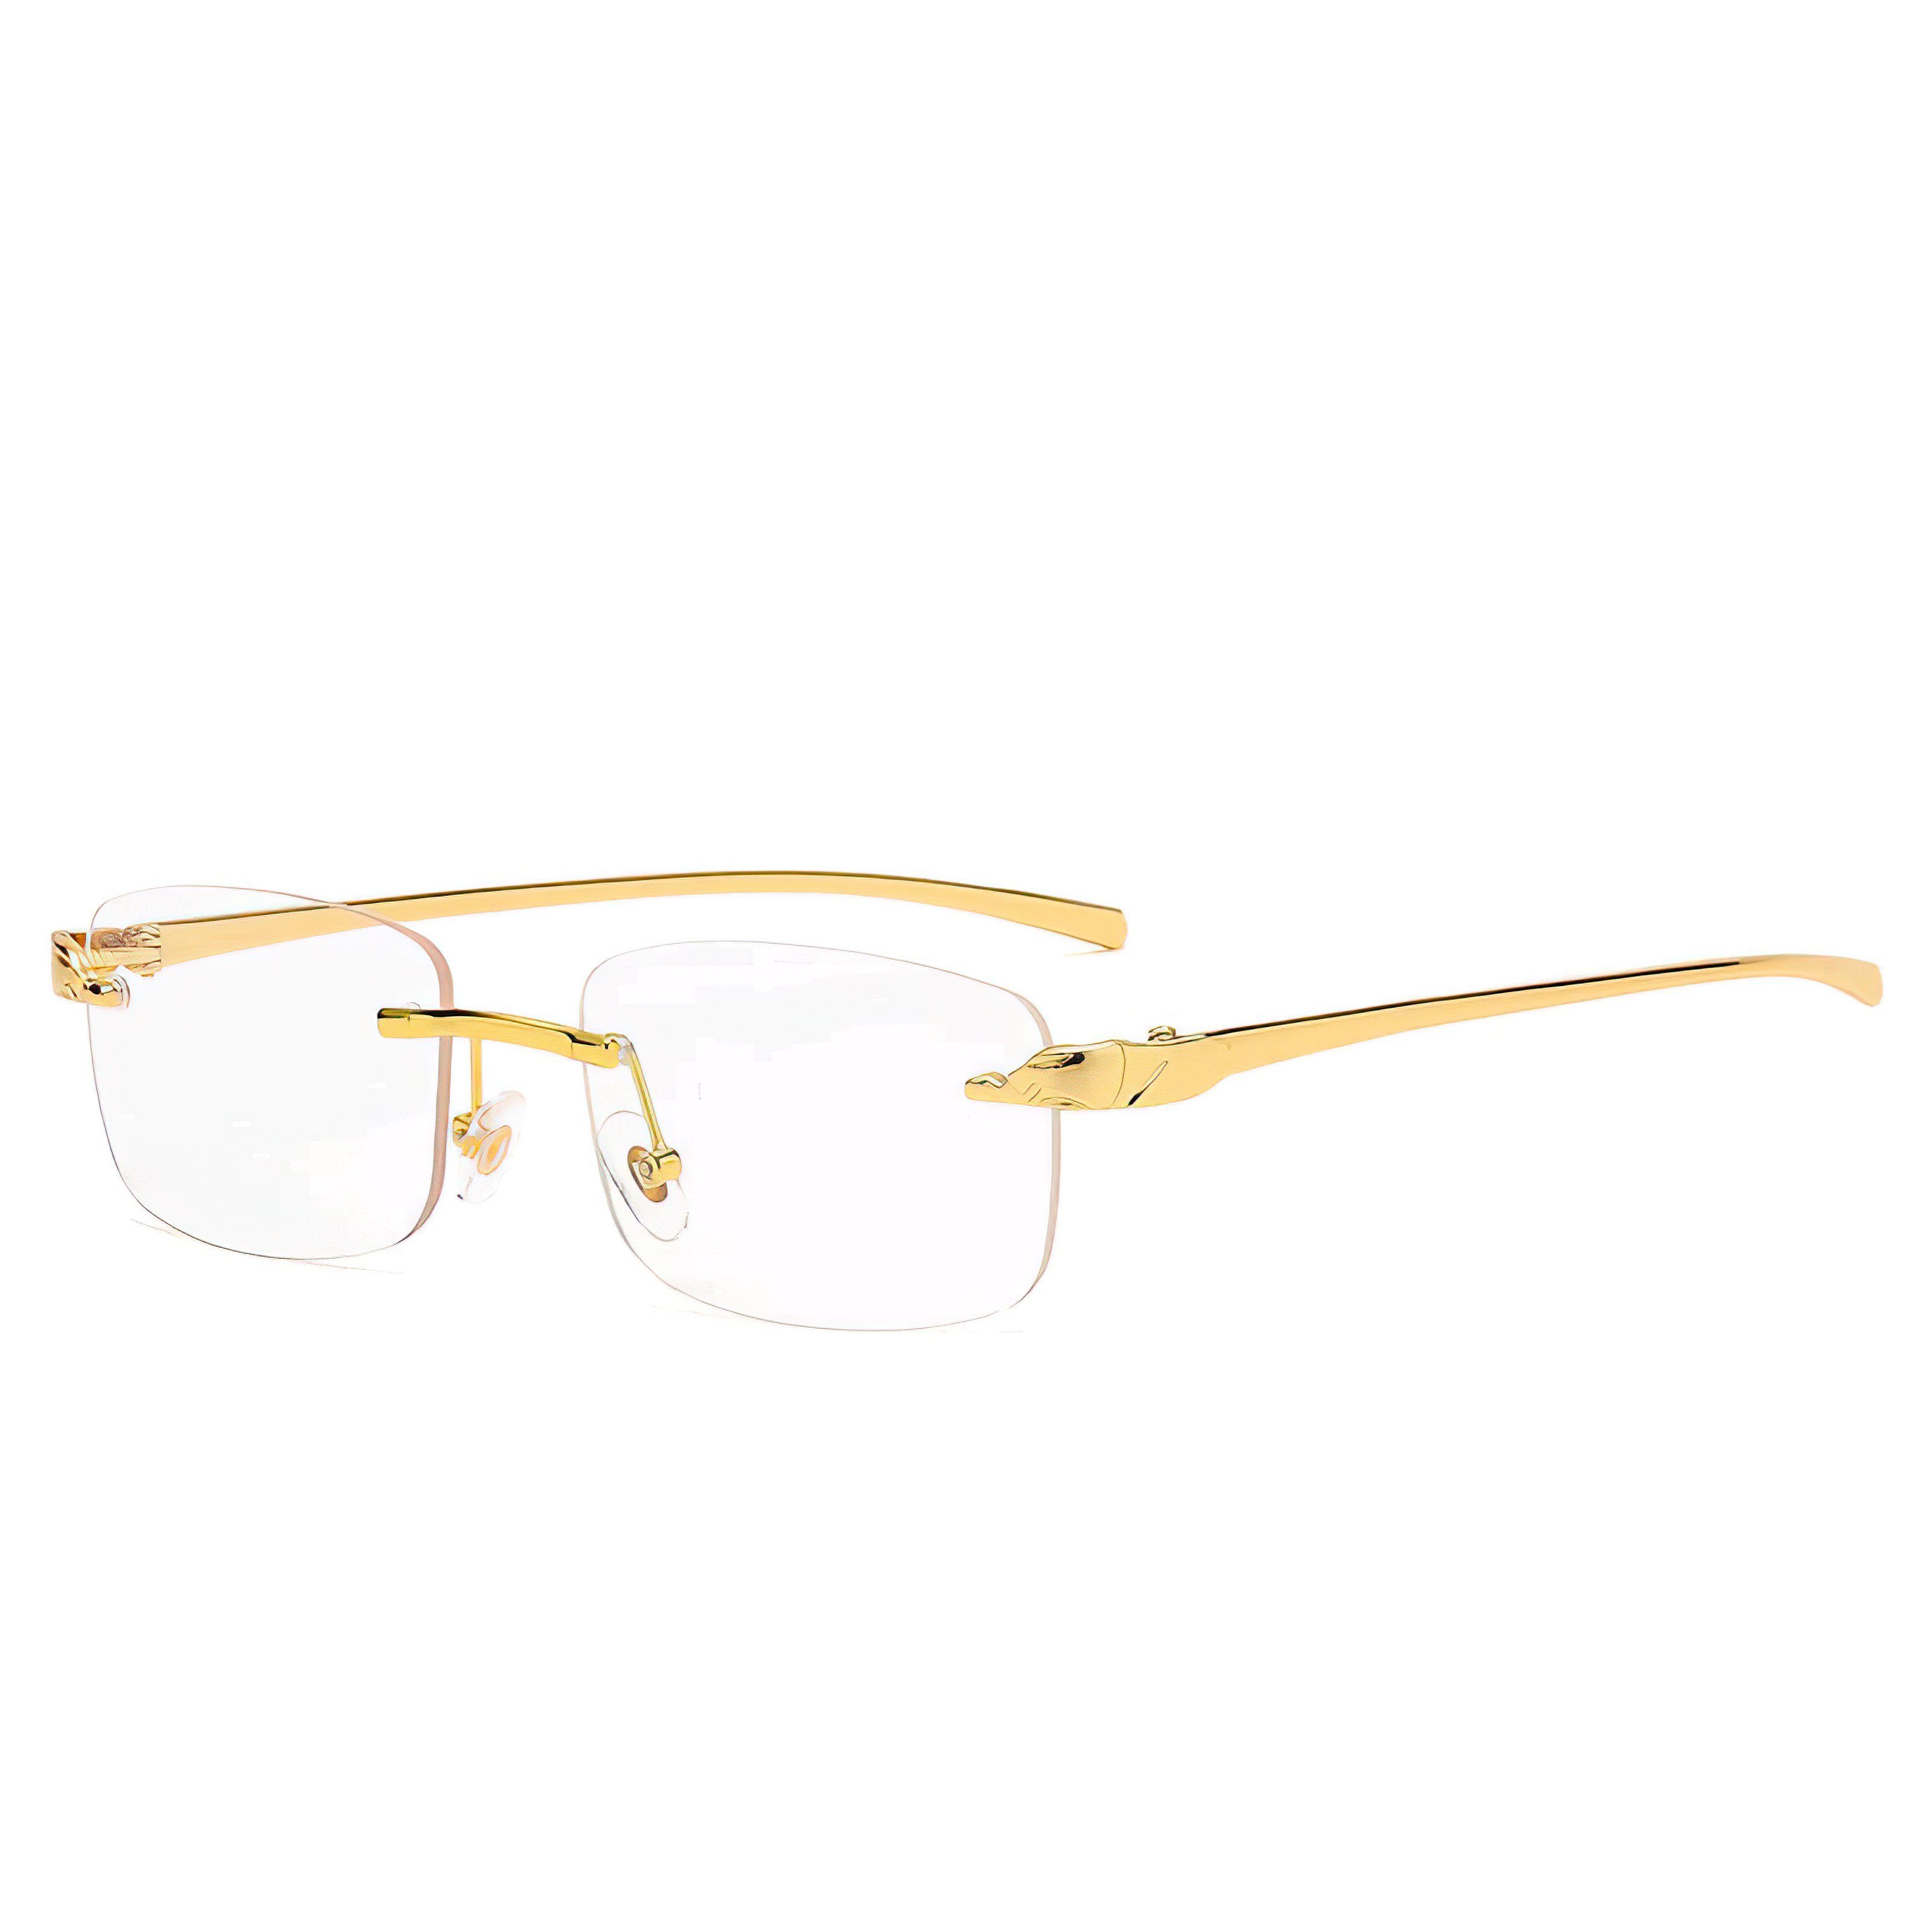 Damen Rechteckig Unisex Sonnenbrille 4 Brille Farben Transparent salazar.plus Farblos Rahmenlos Randlos Herren